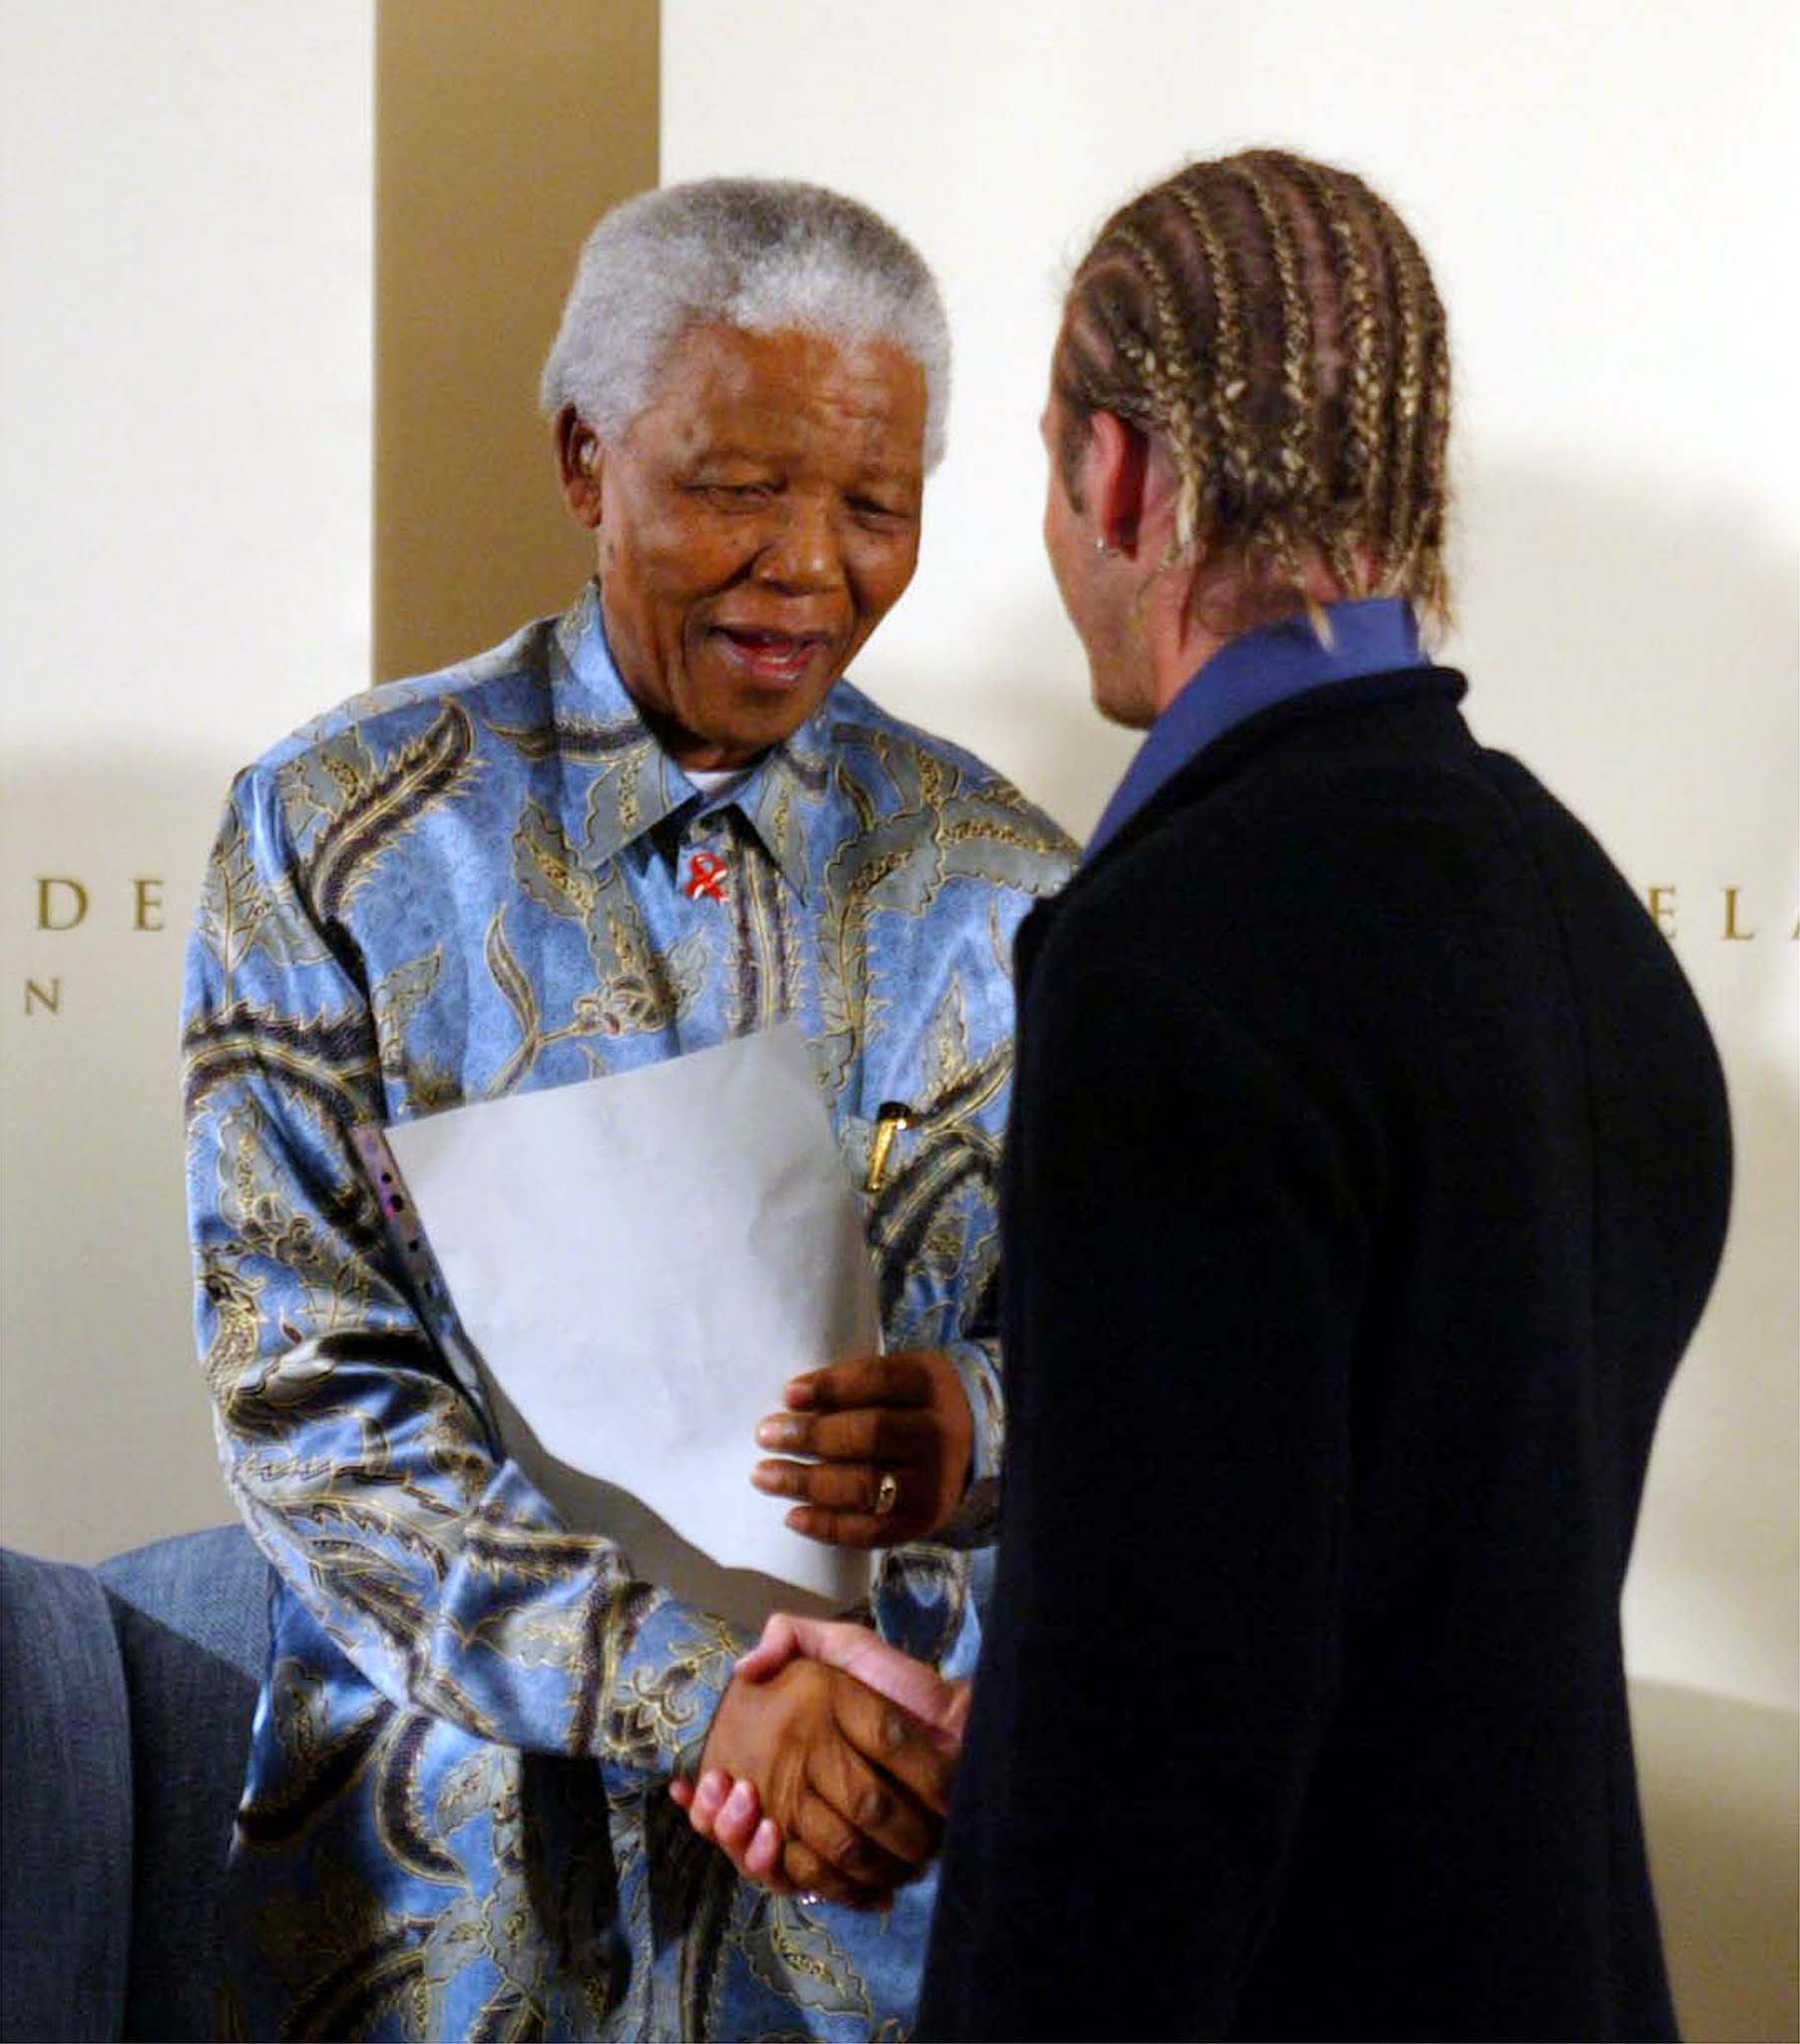 Er verrät: Das Bild, das ich von Nelson Mandela habe, zeigt mich, wie ich seine Hand halte, mit Cornrows im Haar.  Das ist mein einziges Bedauern.